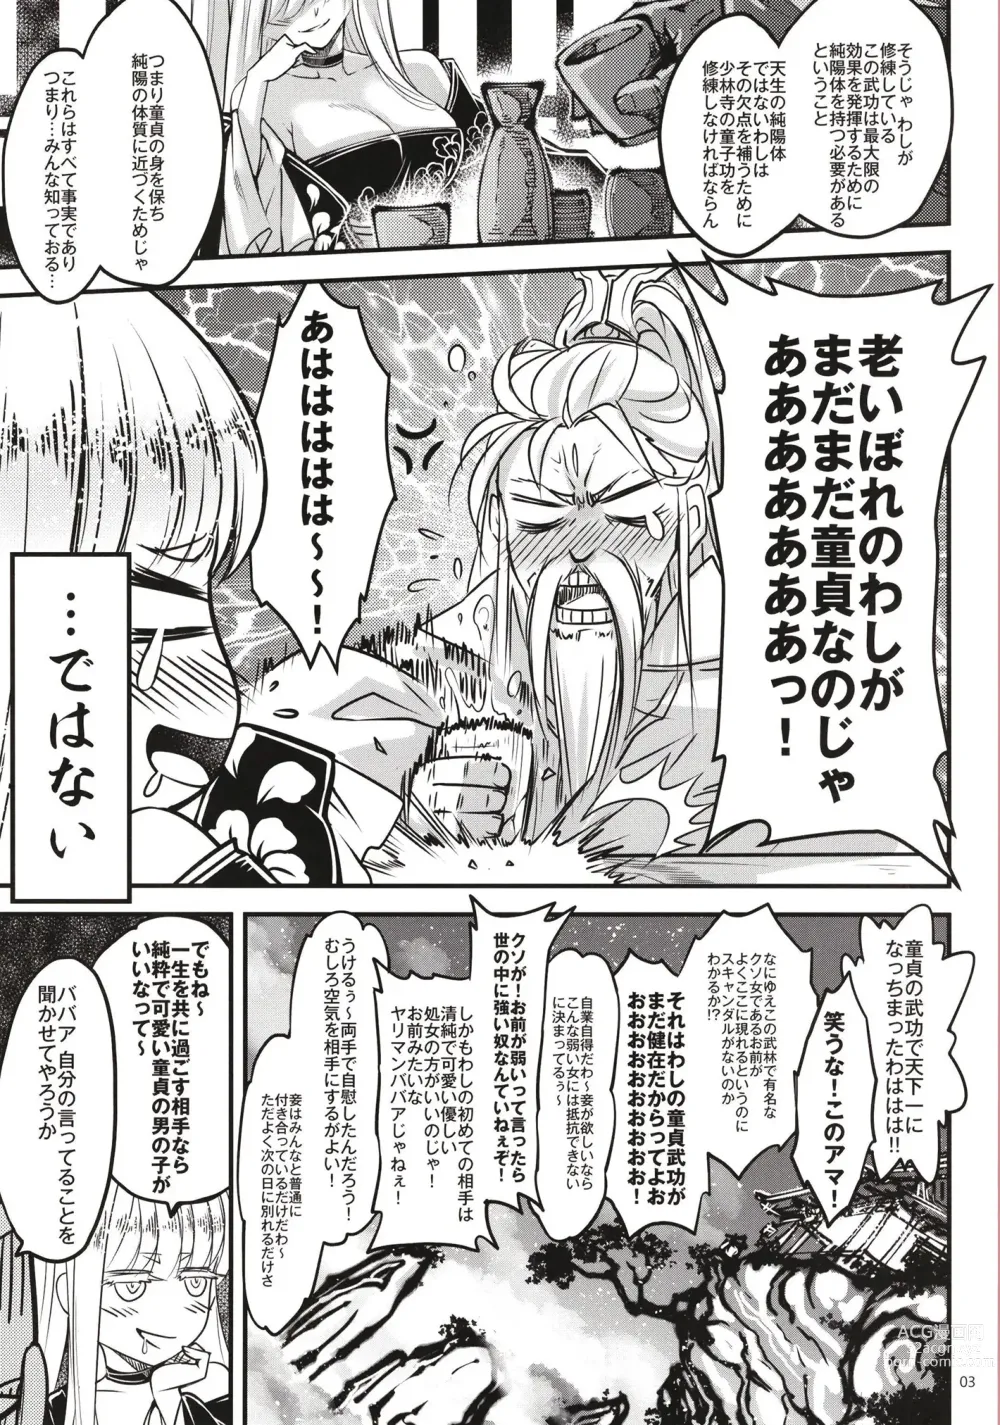 Page 4 of doujinshi Hyakkasou 11 Idatsu Ijitsu Gaiden